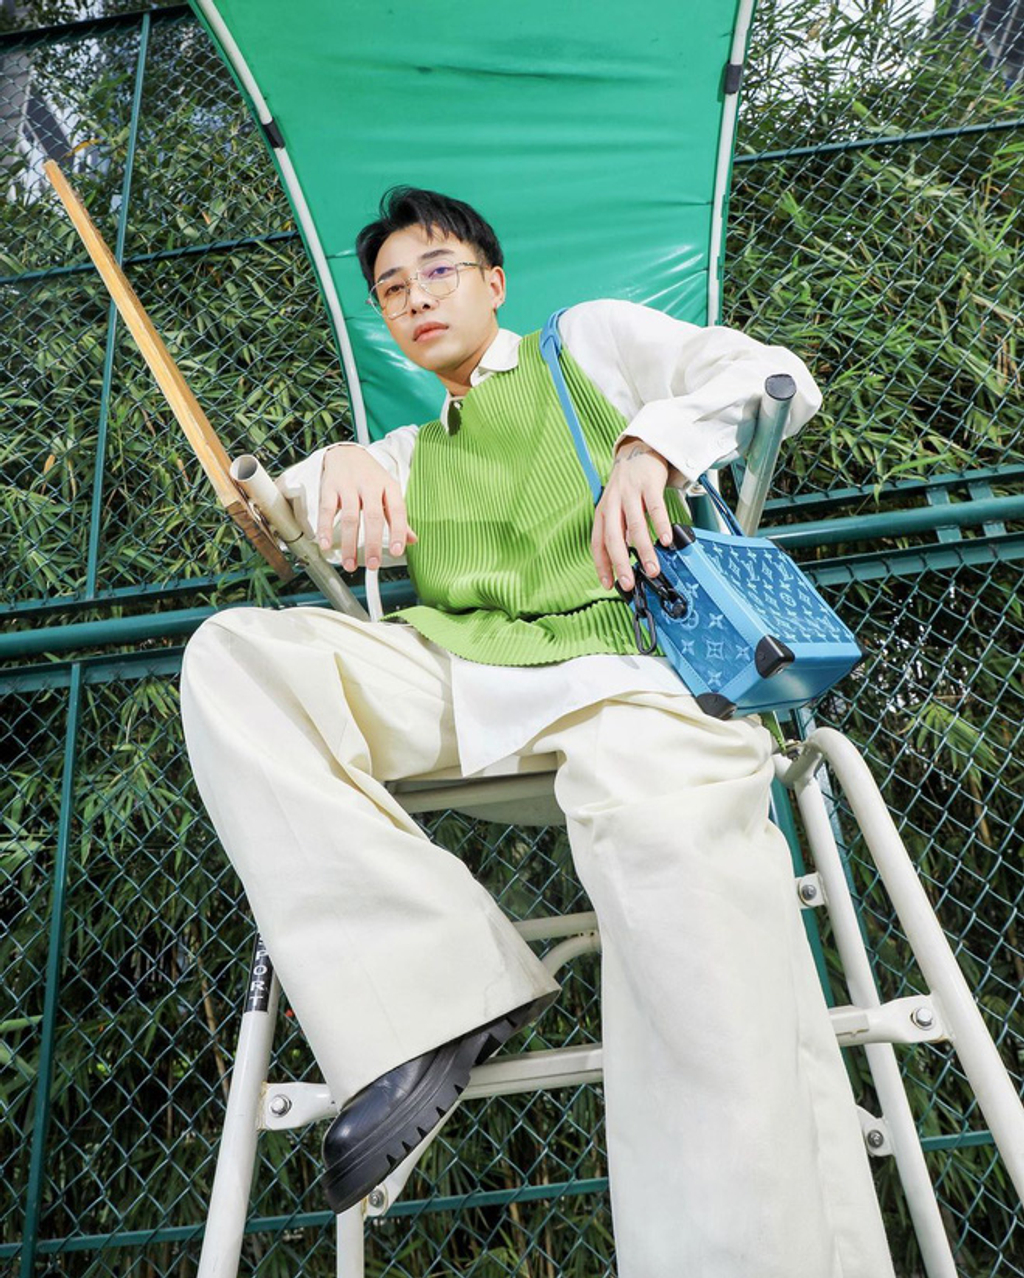 Stylist Hoàng Ku lăng xê gam xanh lá với chiếc áo len ghi lê xanh nõn chuối